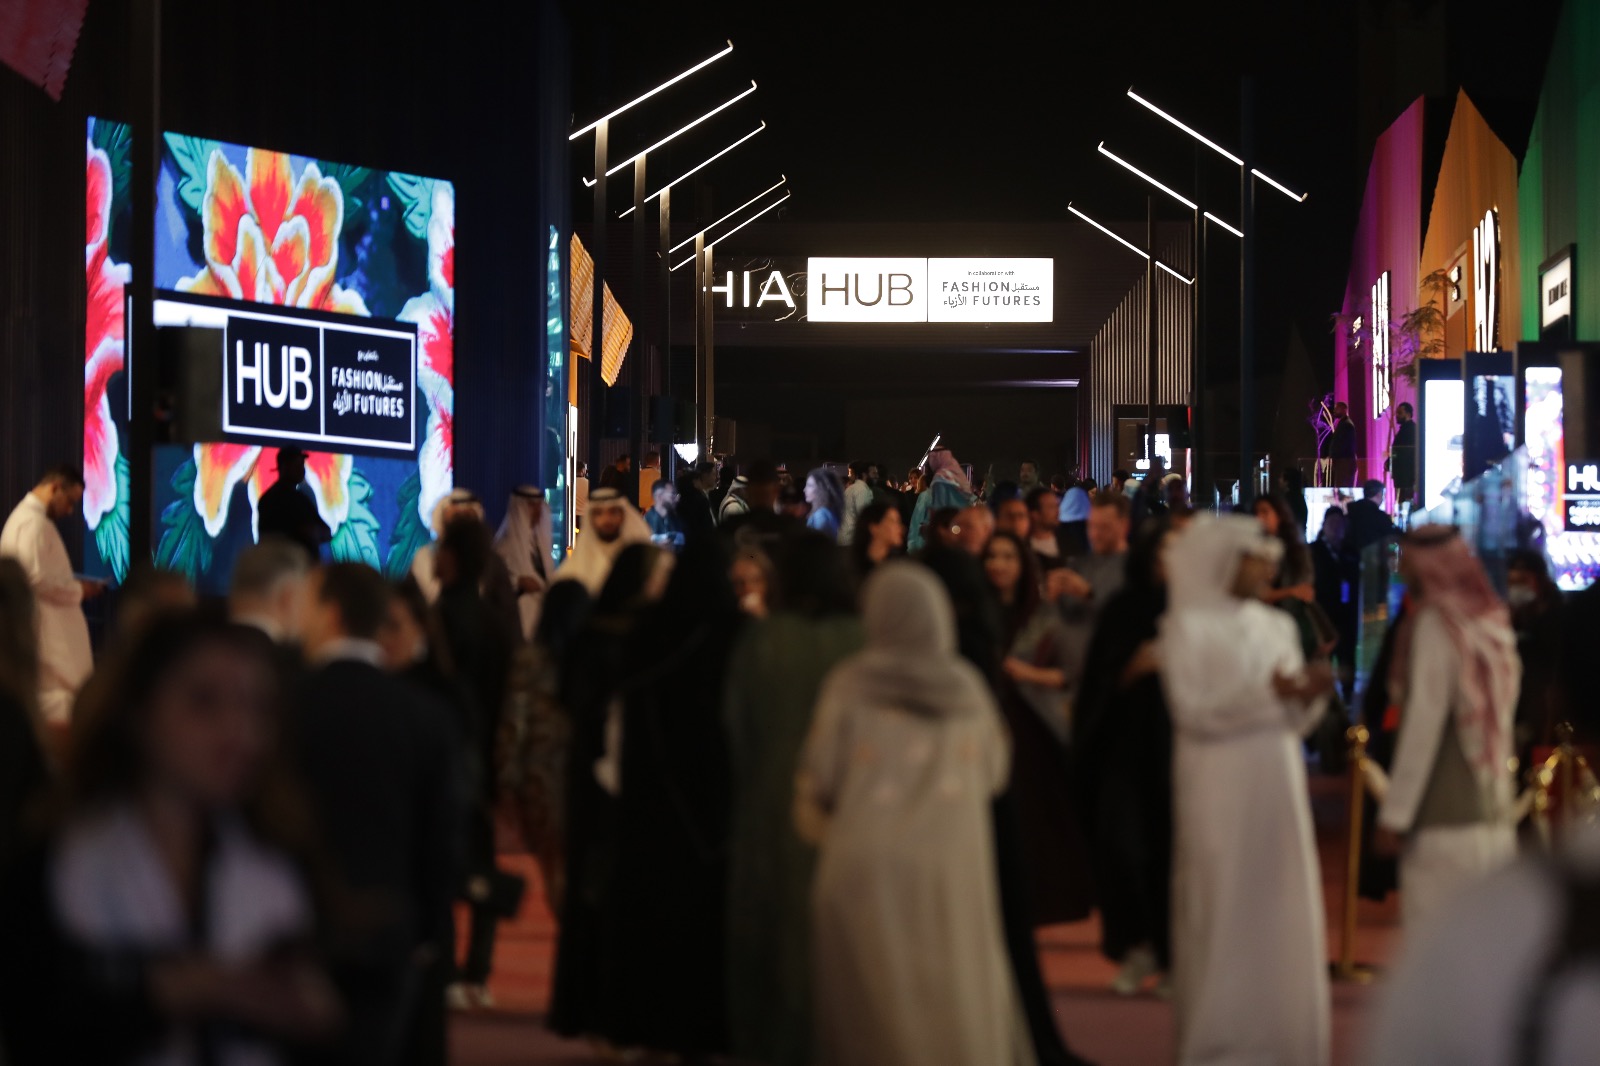 اختتام "هي هَبْ" أكبر مؤتمر أزياء وأسلوب حياة في المنطقة بالتعاون مع "مستقبل الأزياء" وبحضور شخصيات بارزة من رواد الصناعة